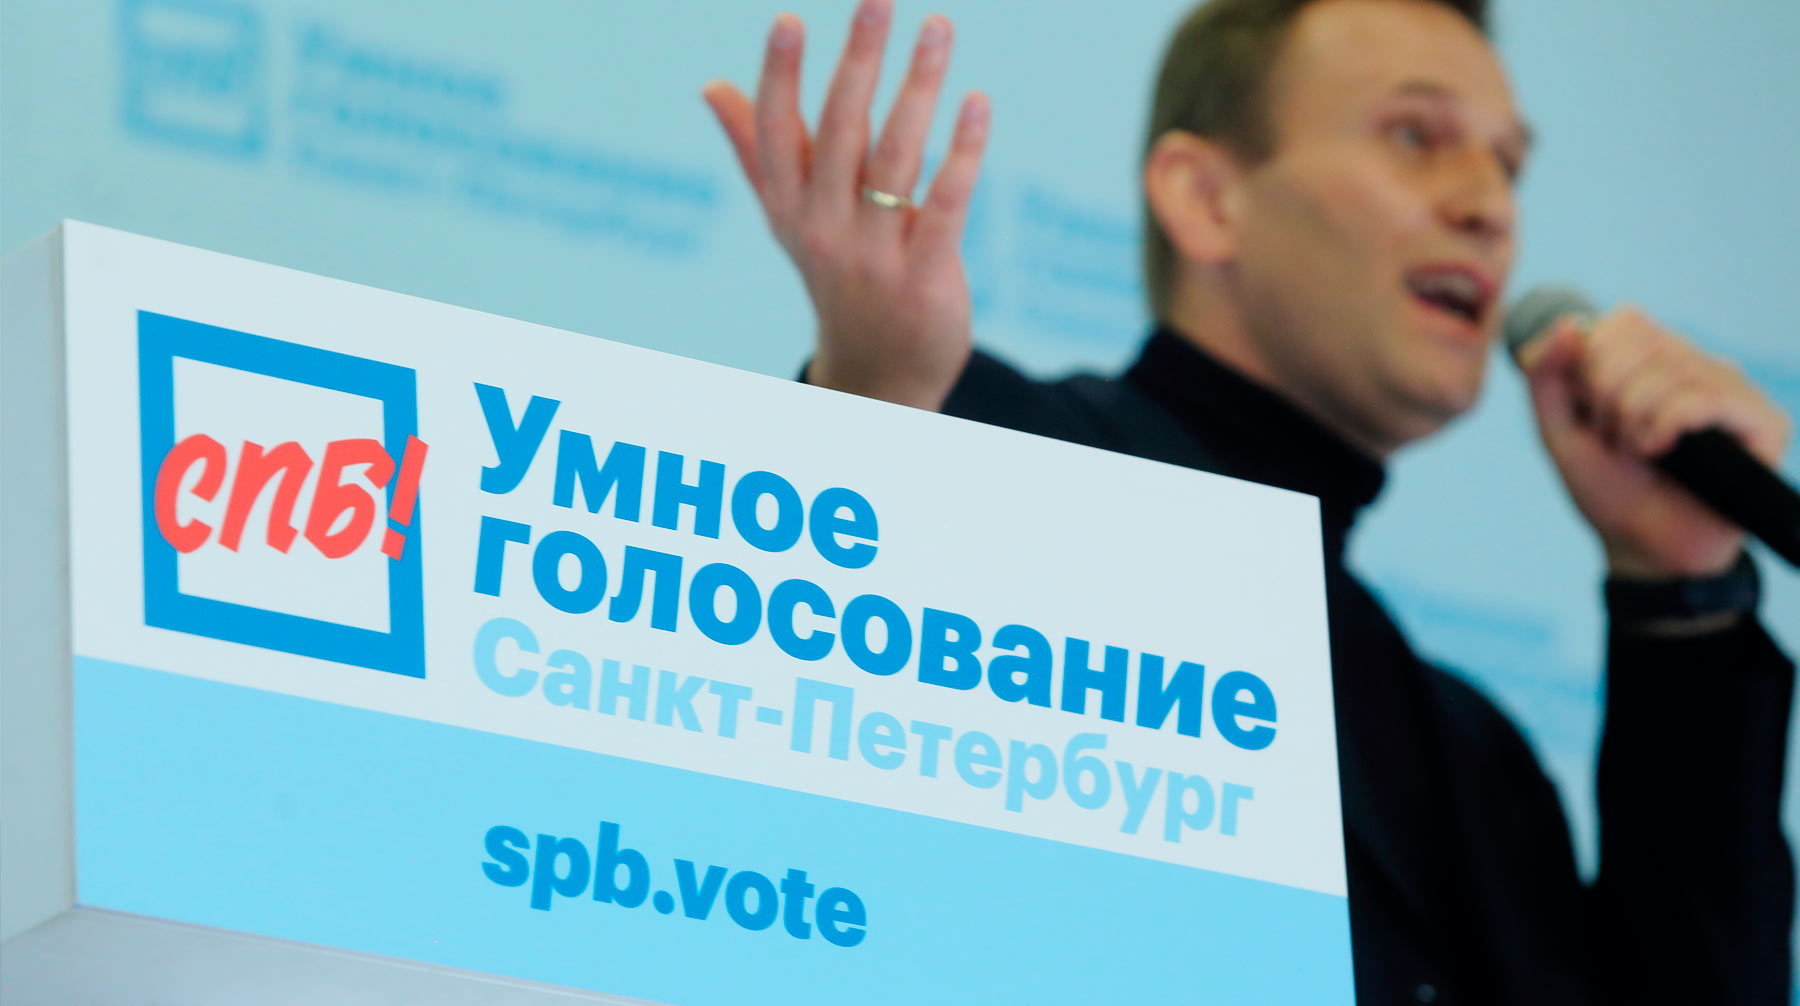 Стратегия оппозиции не помешала кандидатам ЕР, уверены в партии Фото: © Global Look Press / Zamir Usmanov